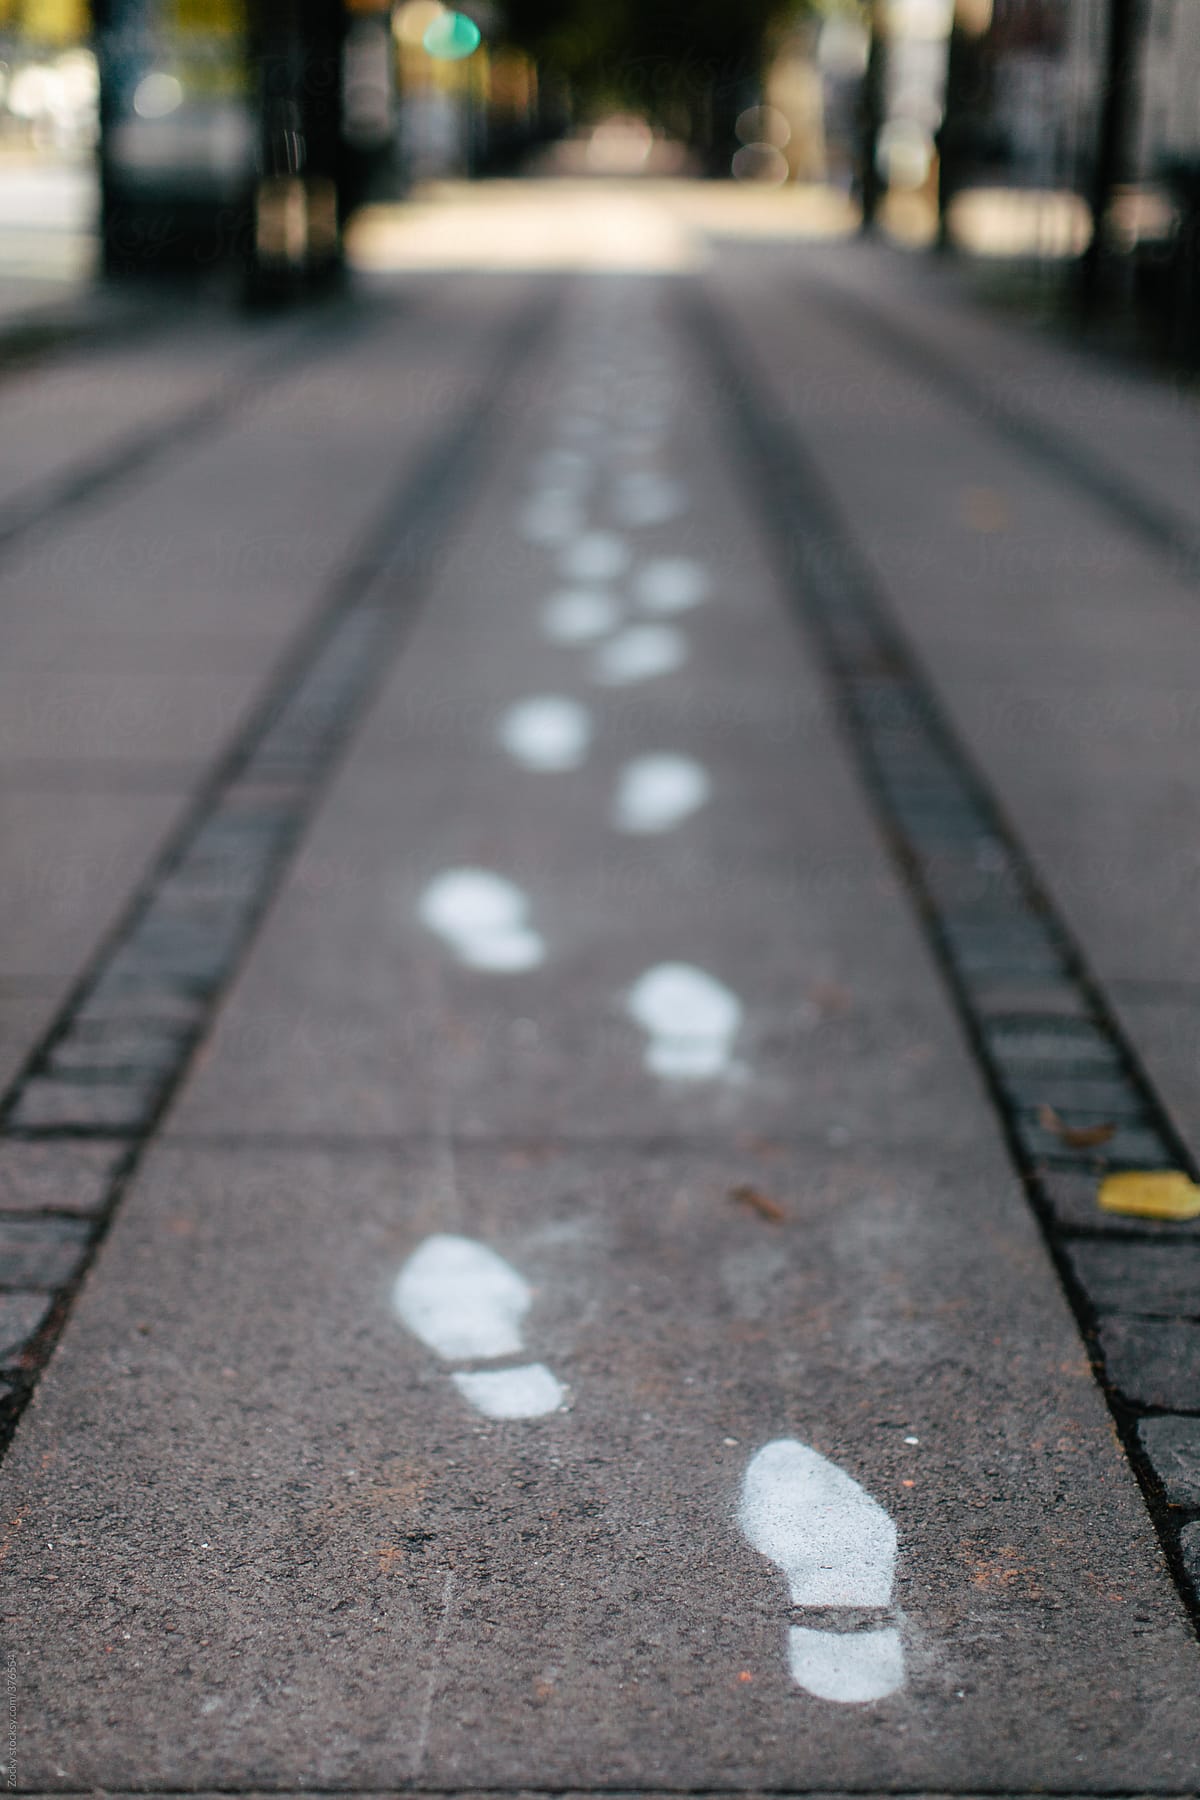 Painted footprints